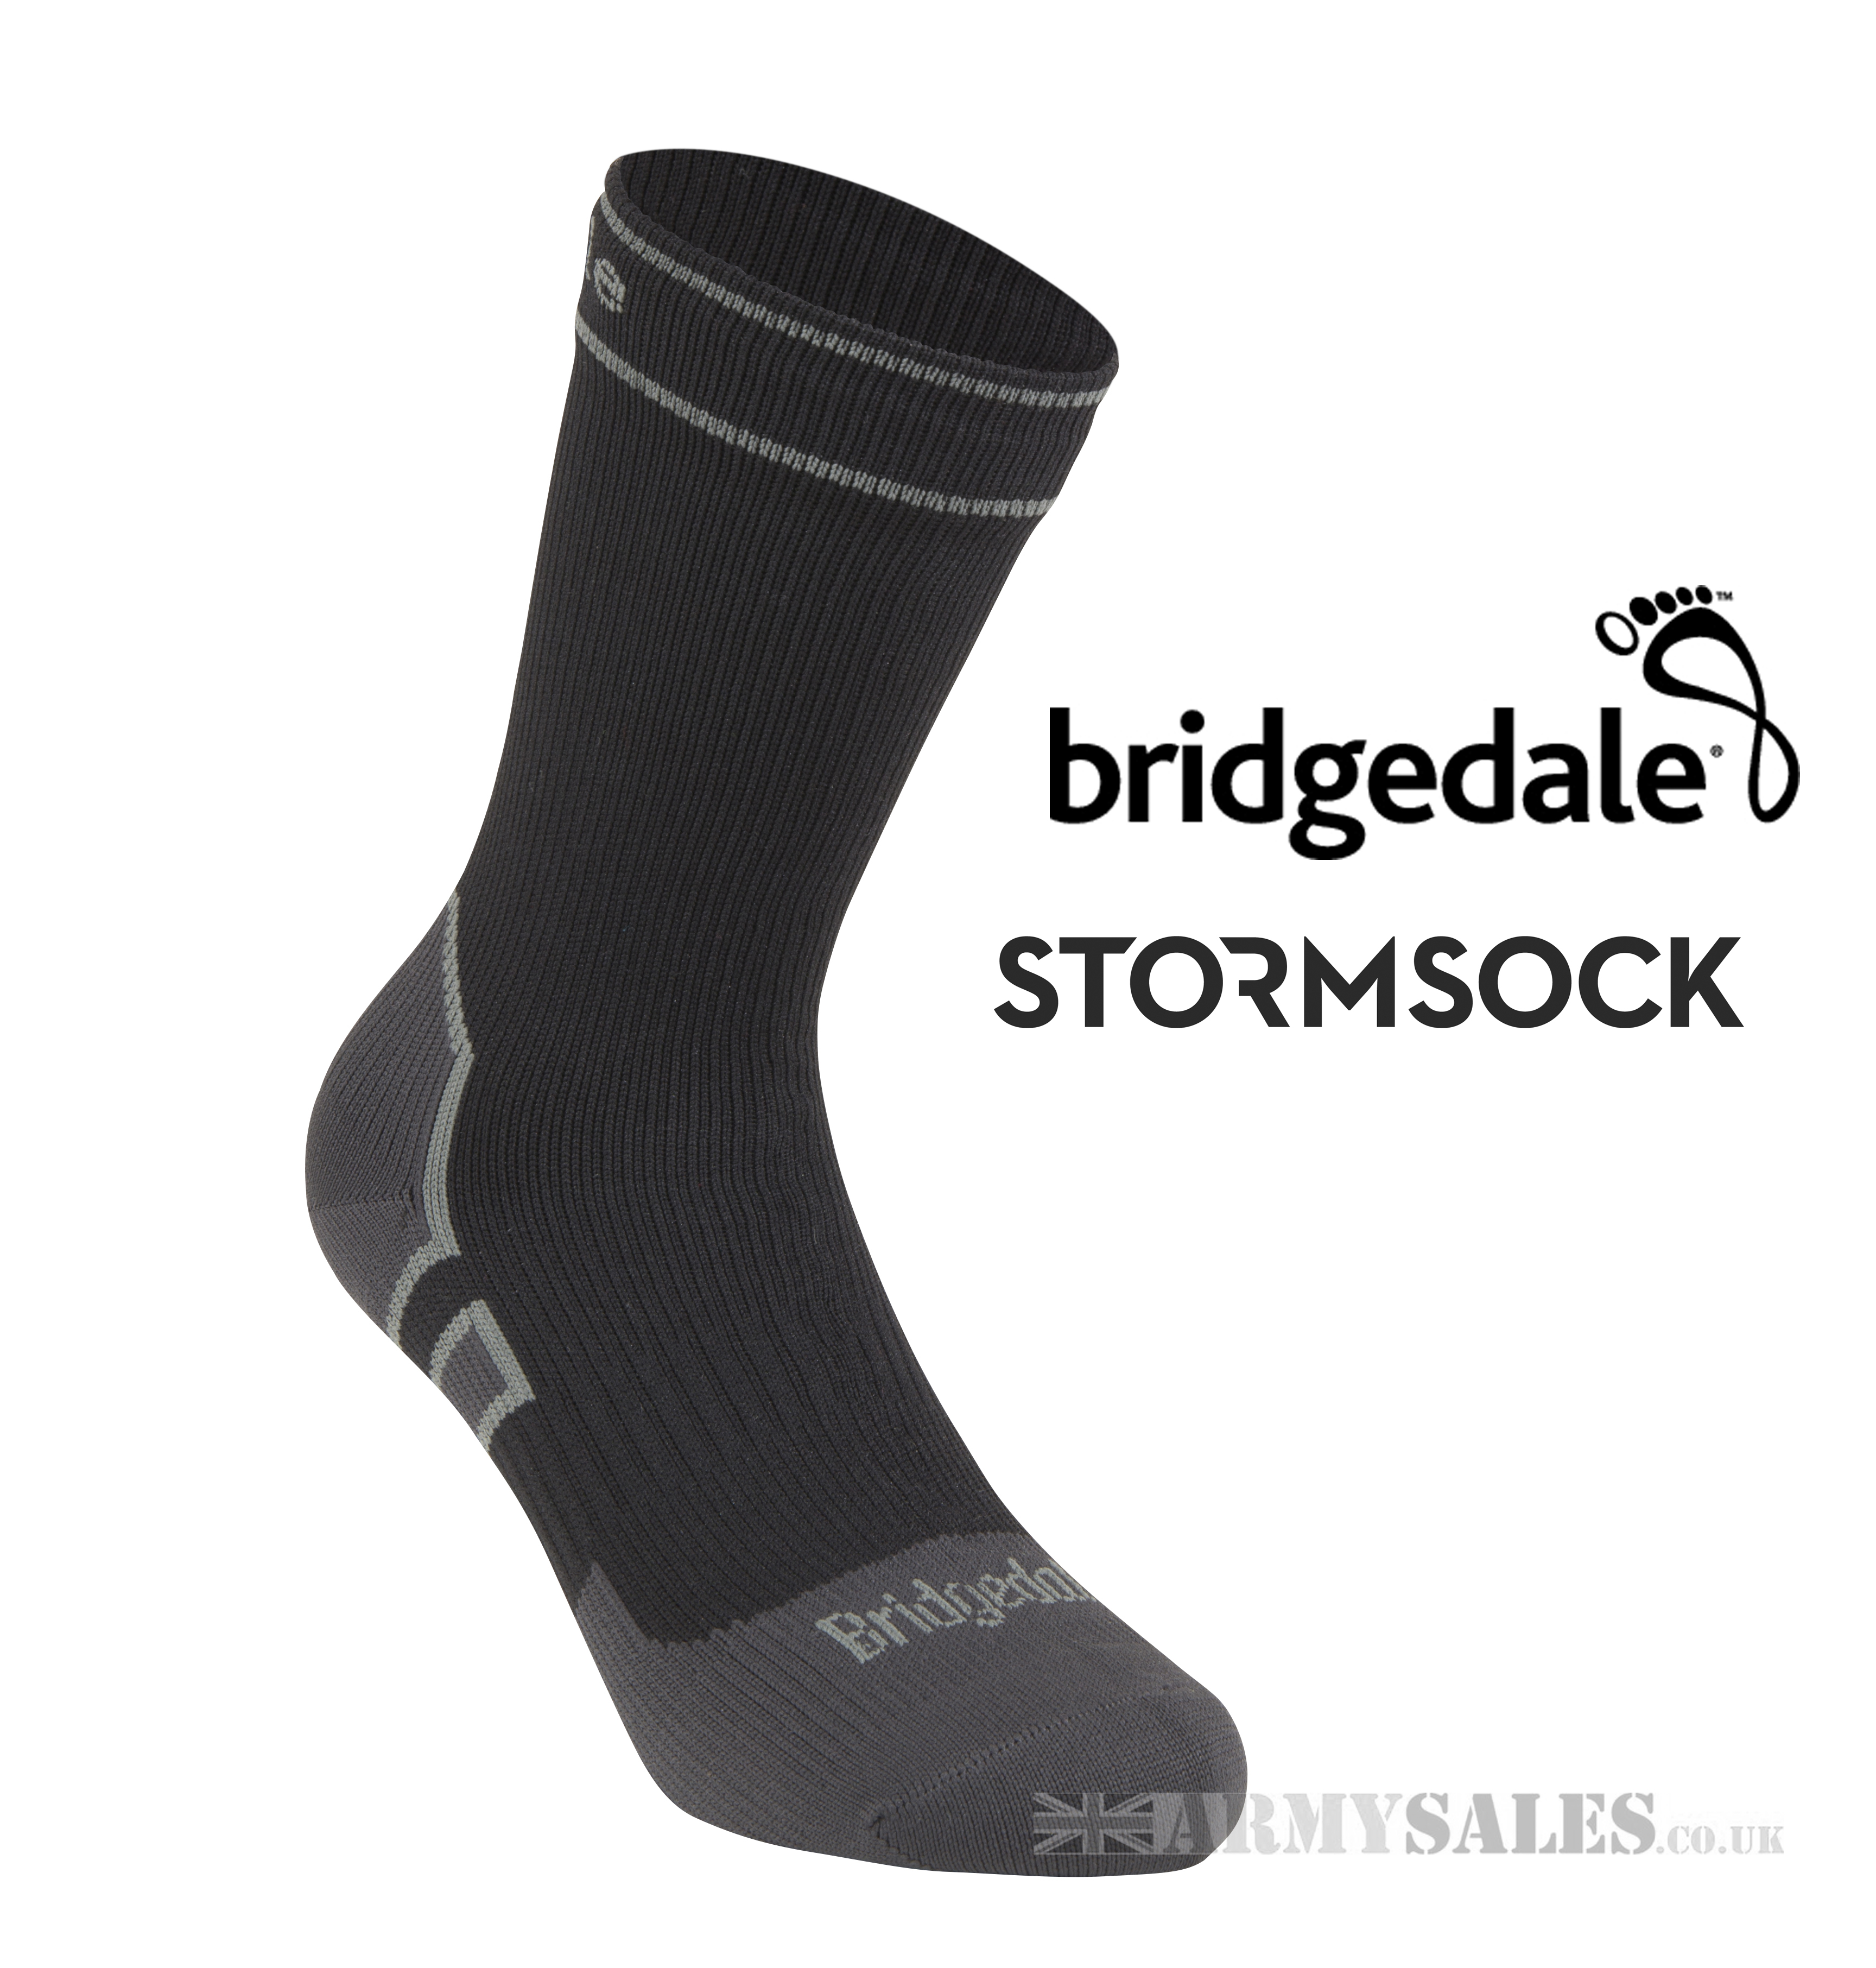 Olive/Black XL Bridgedale StormSock Heavyweight Boot Length Waterproof Hiking Sock 